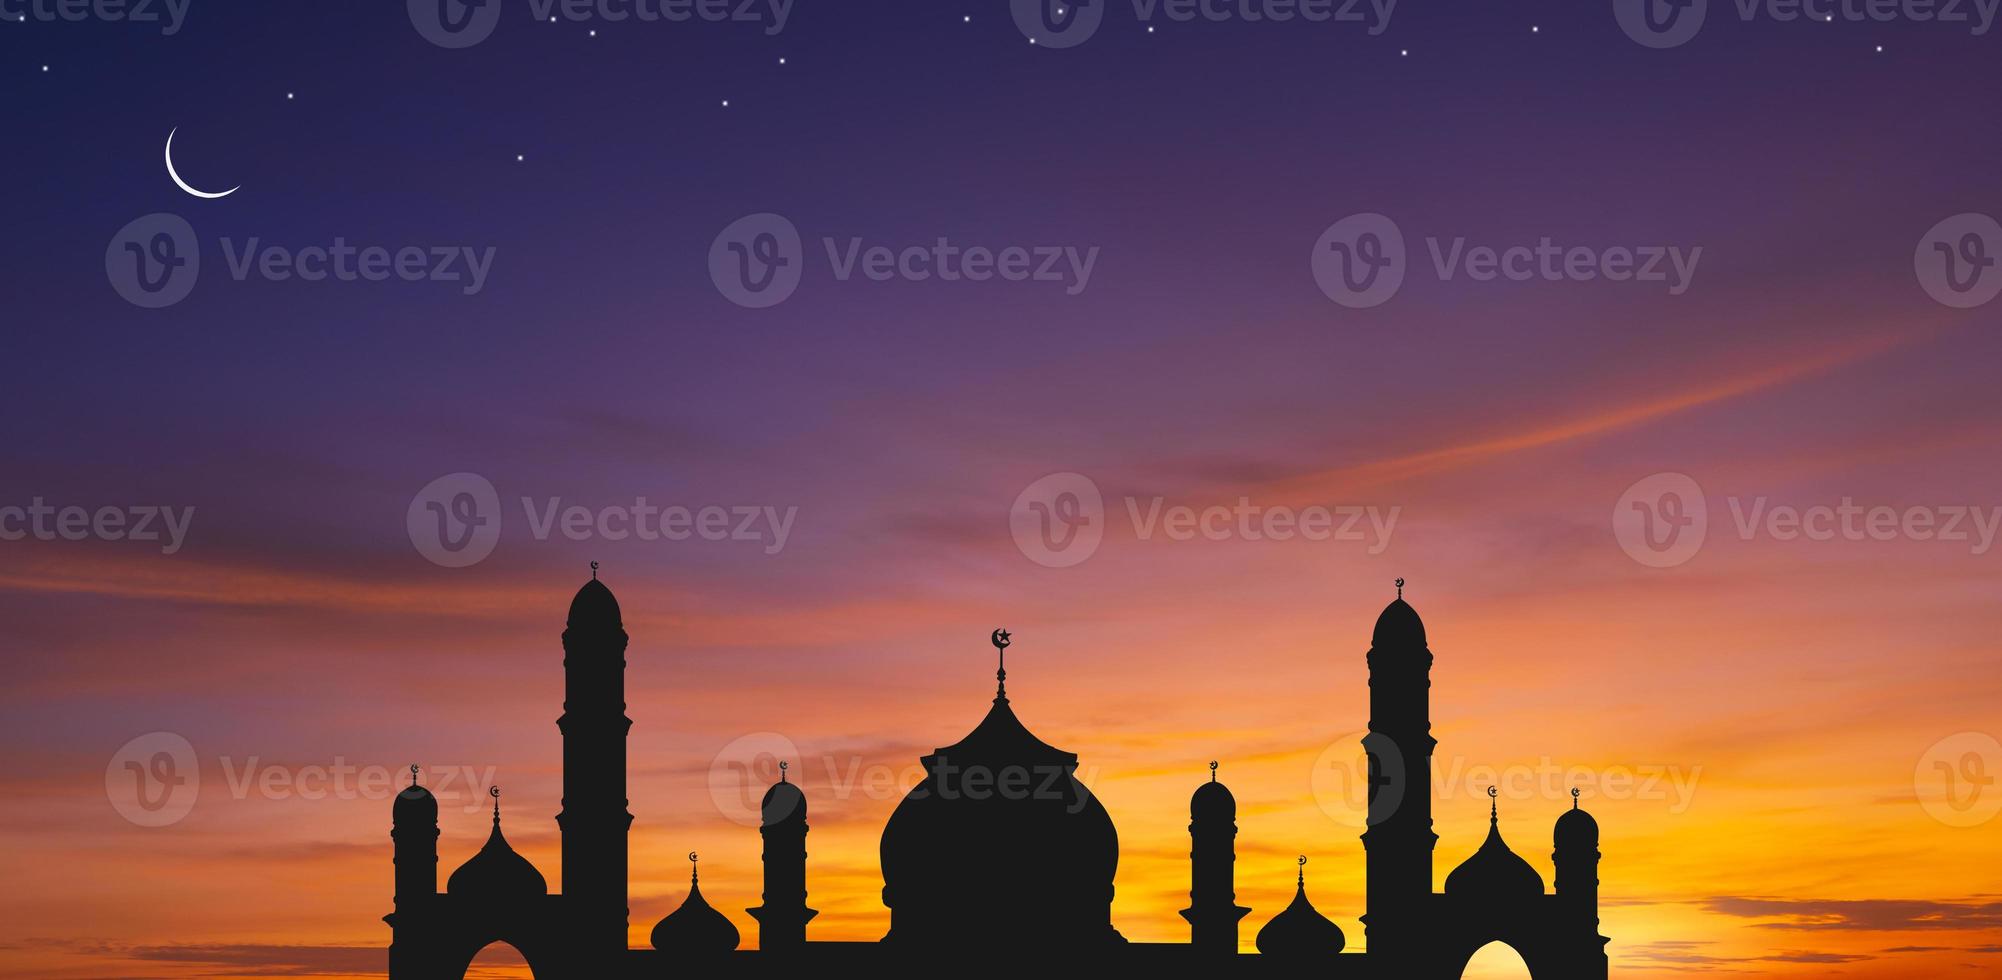 vista panorâmica da cúpula da mesquita de silhueta contra o céu crepúsculo colorido e lua crescente com estrelas no crepúsculo da noite, design de plano de fundo para o período iftar durante o mês sagrado do ramadã foto